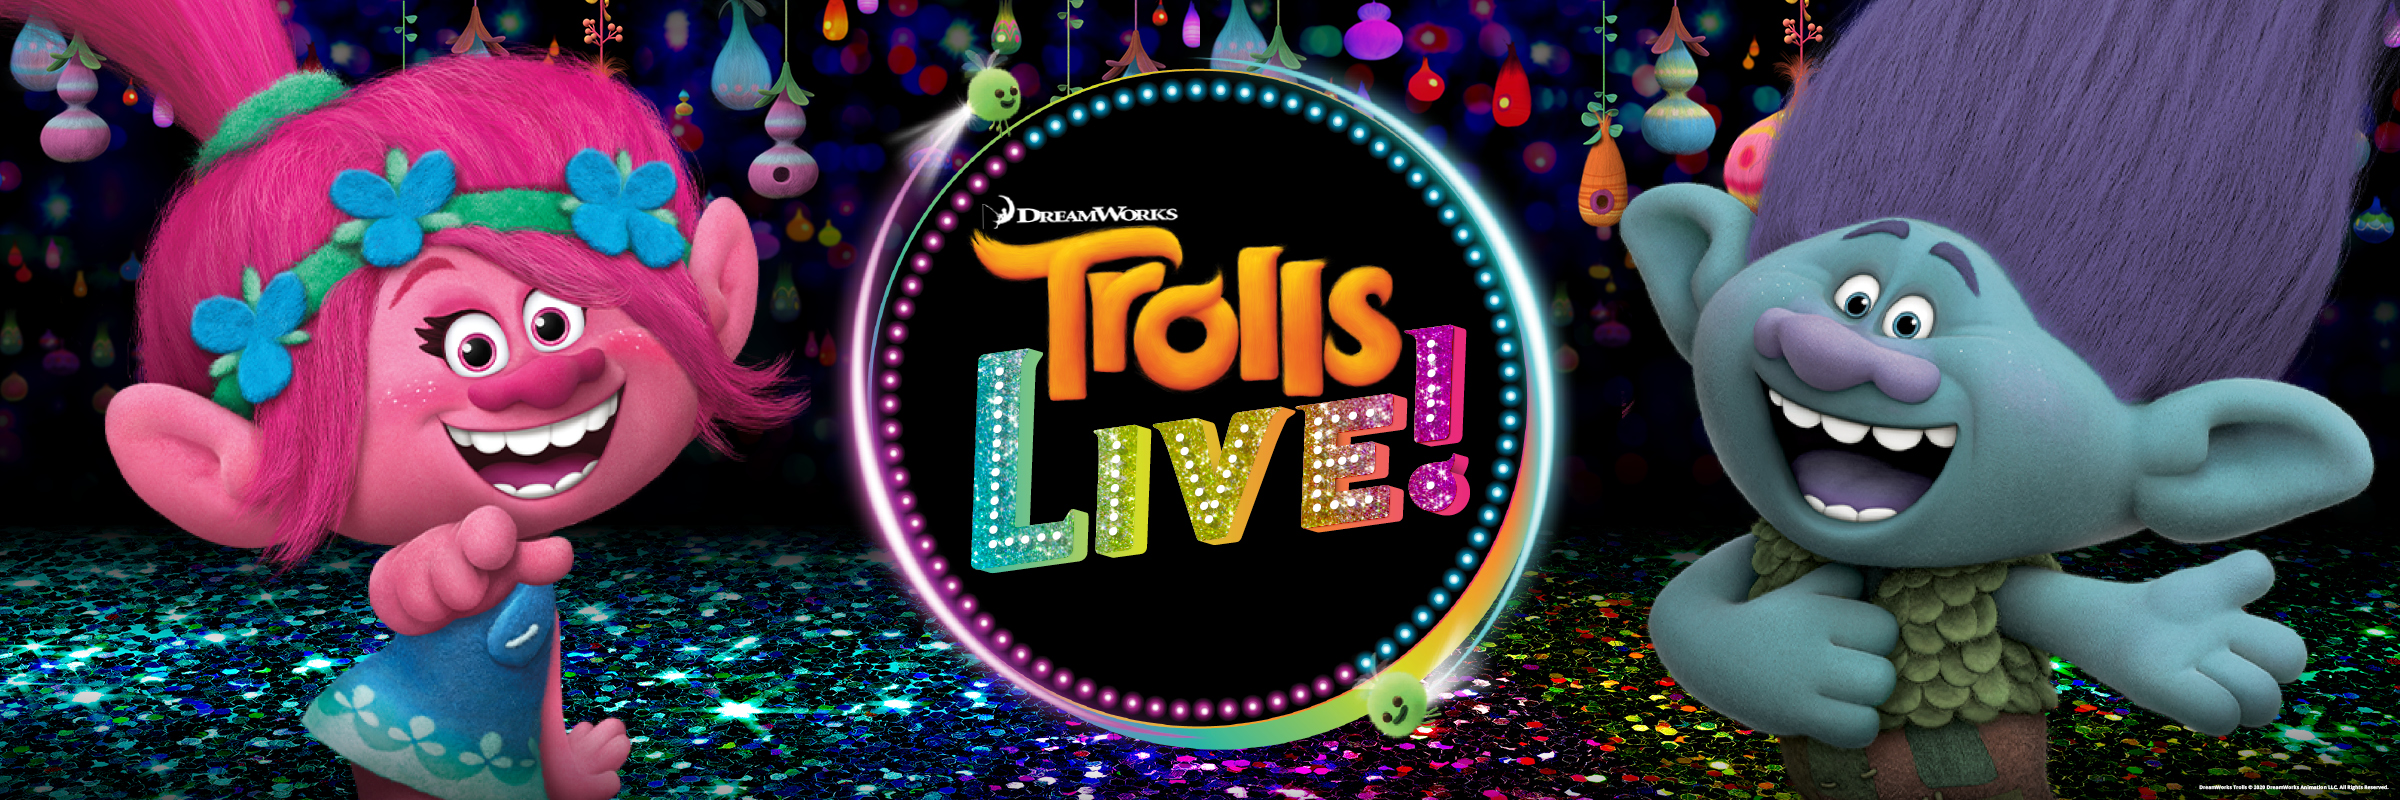 CANCELED: Trolls Live!